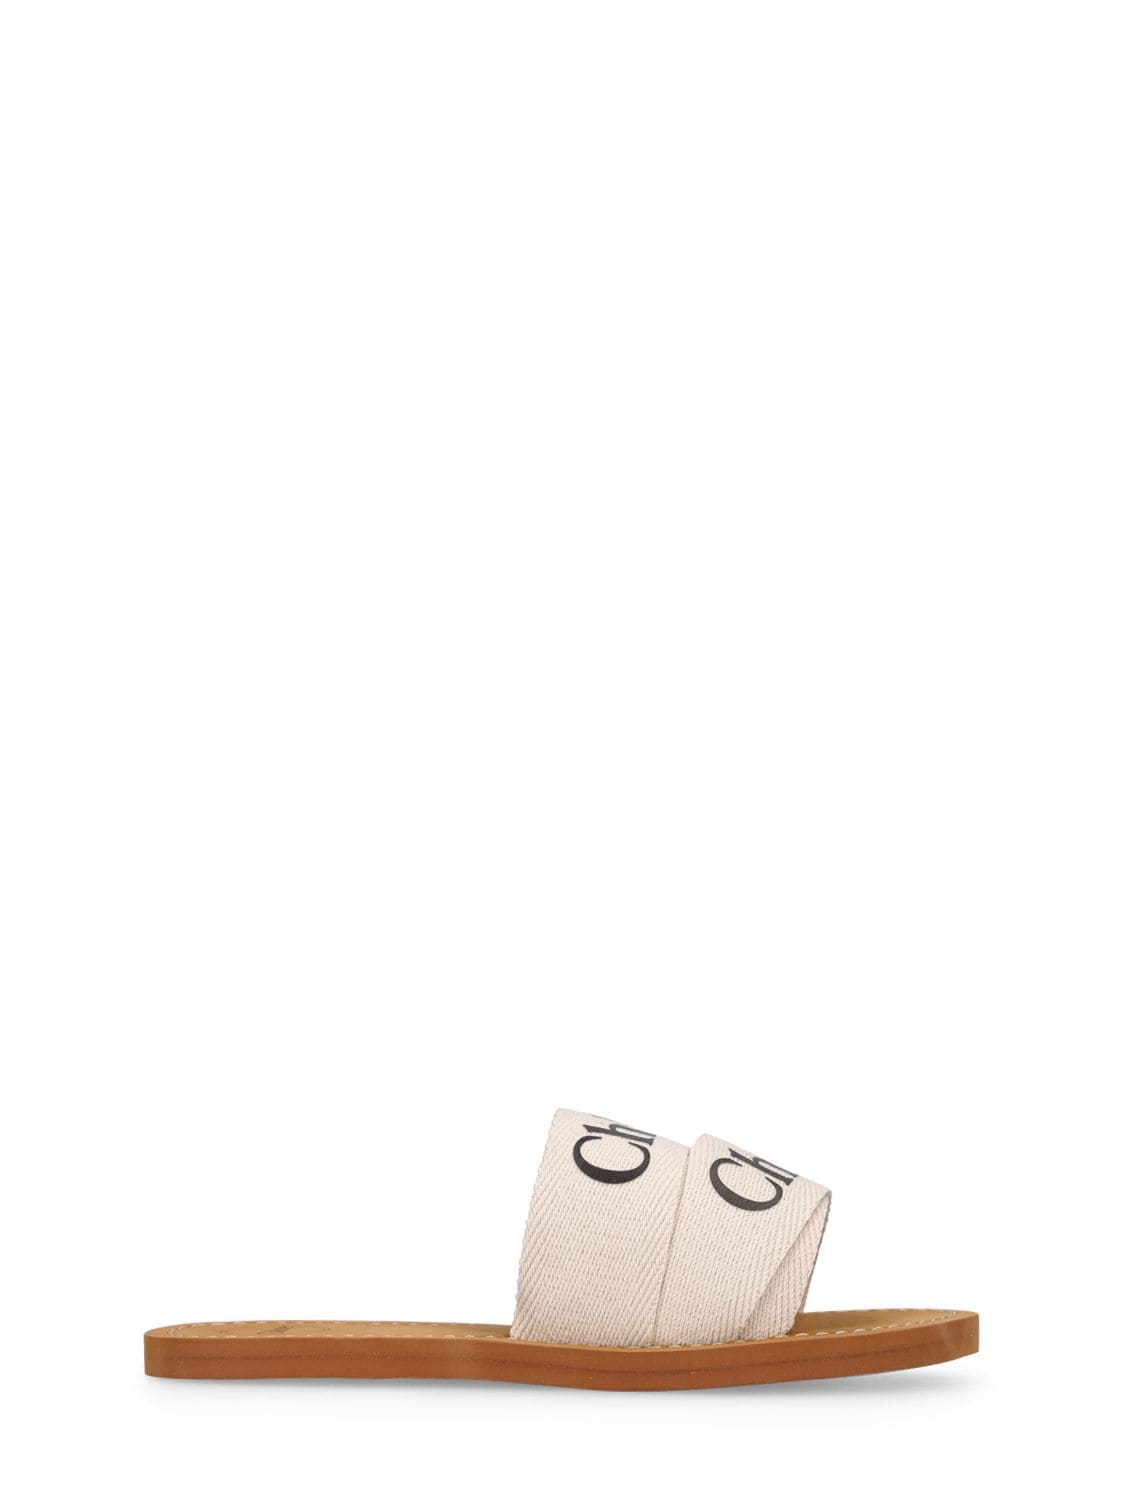 Chloé Kids' Logo Print Slide Sandals In Off White